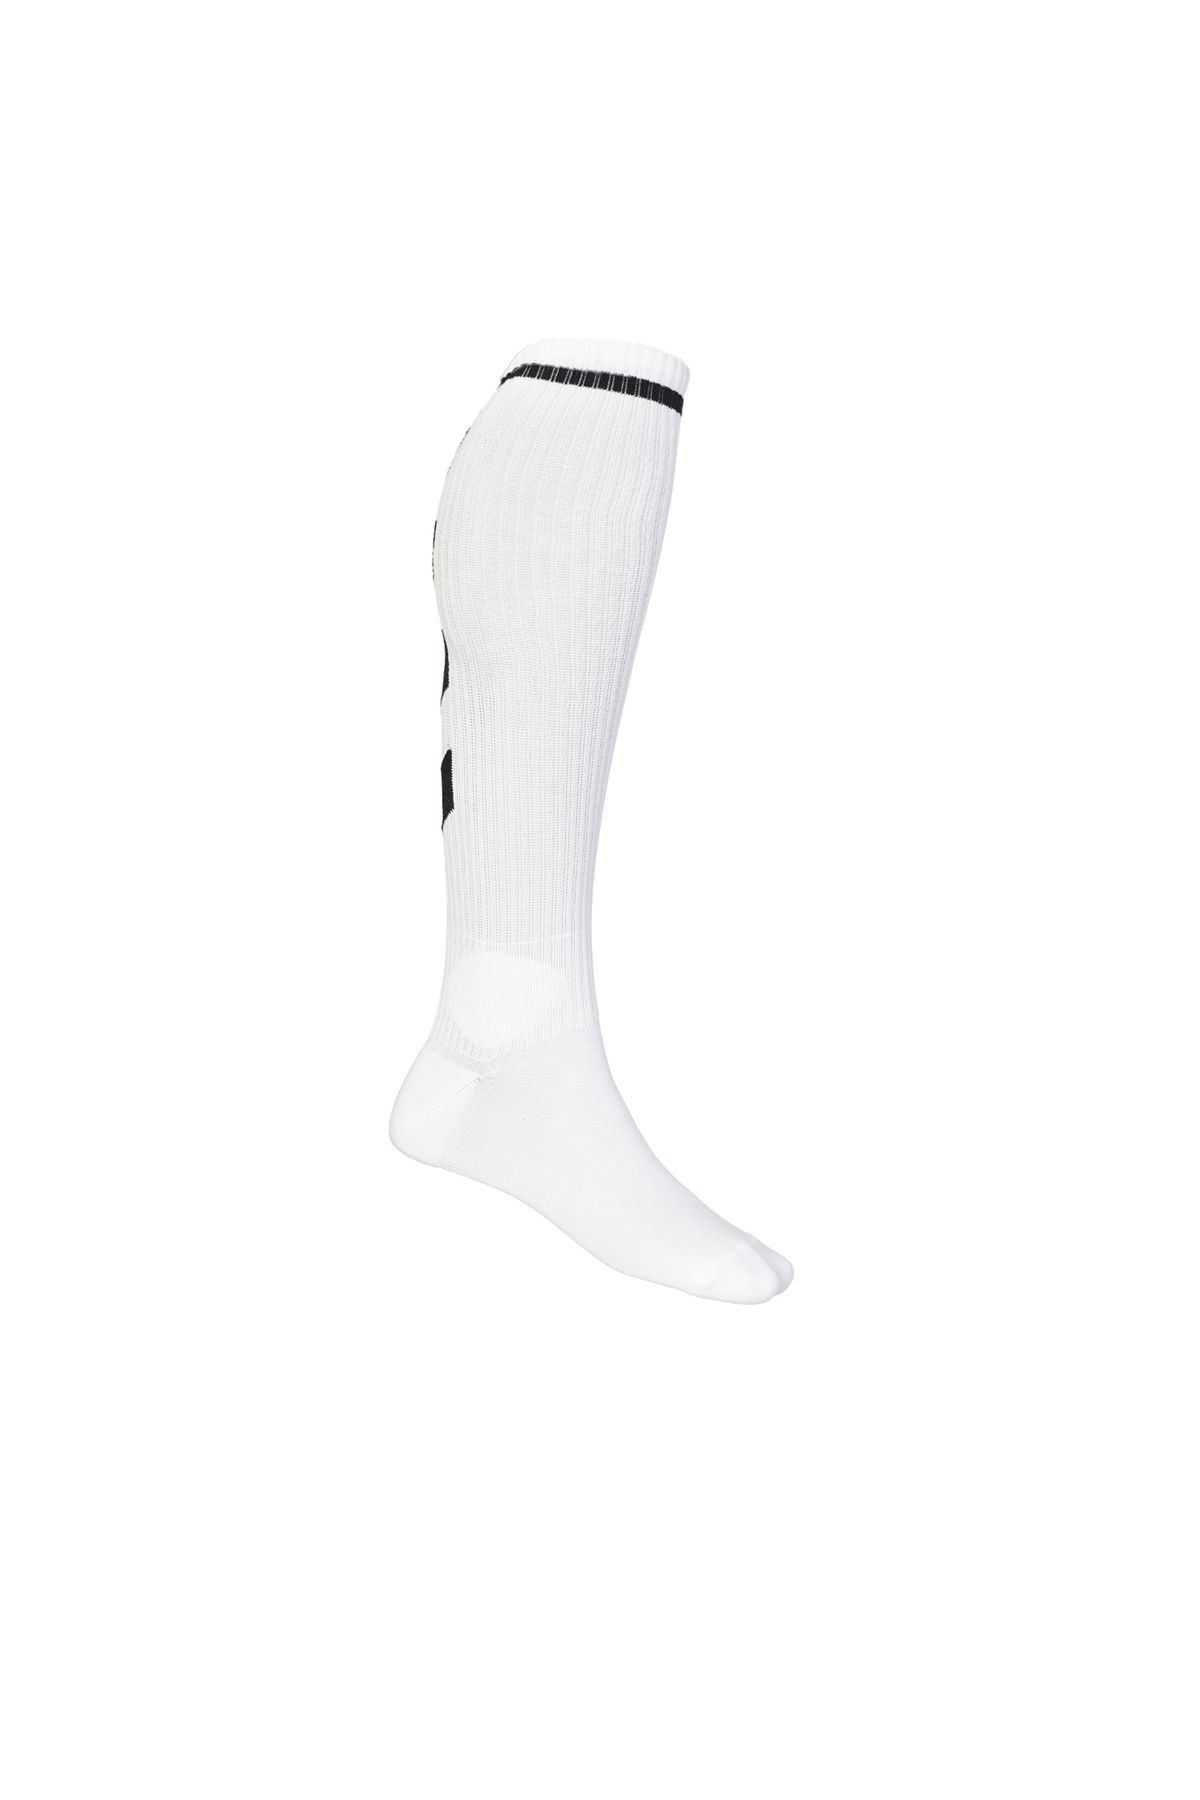 hummel Longfootball Unisex Beyaz Çorap